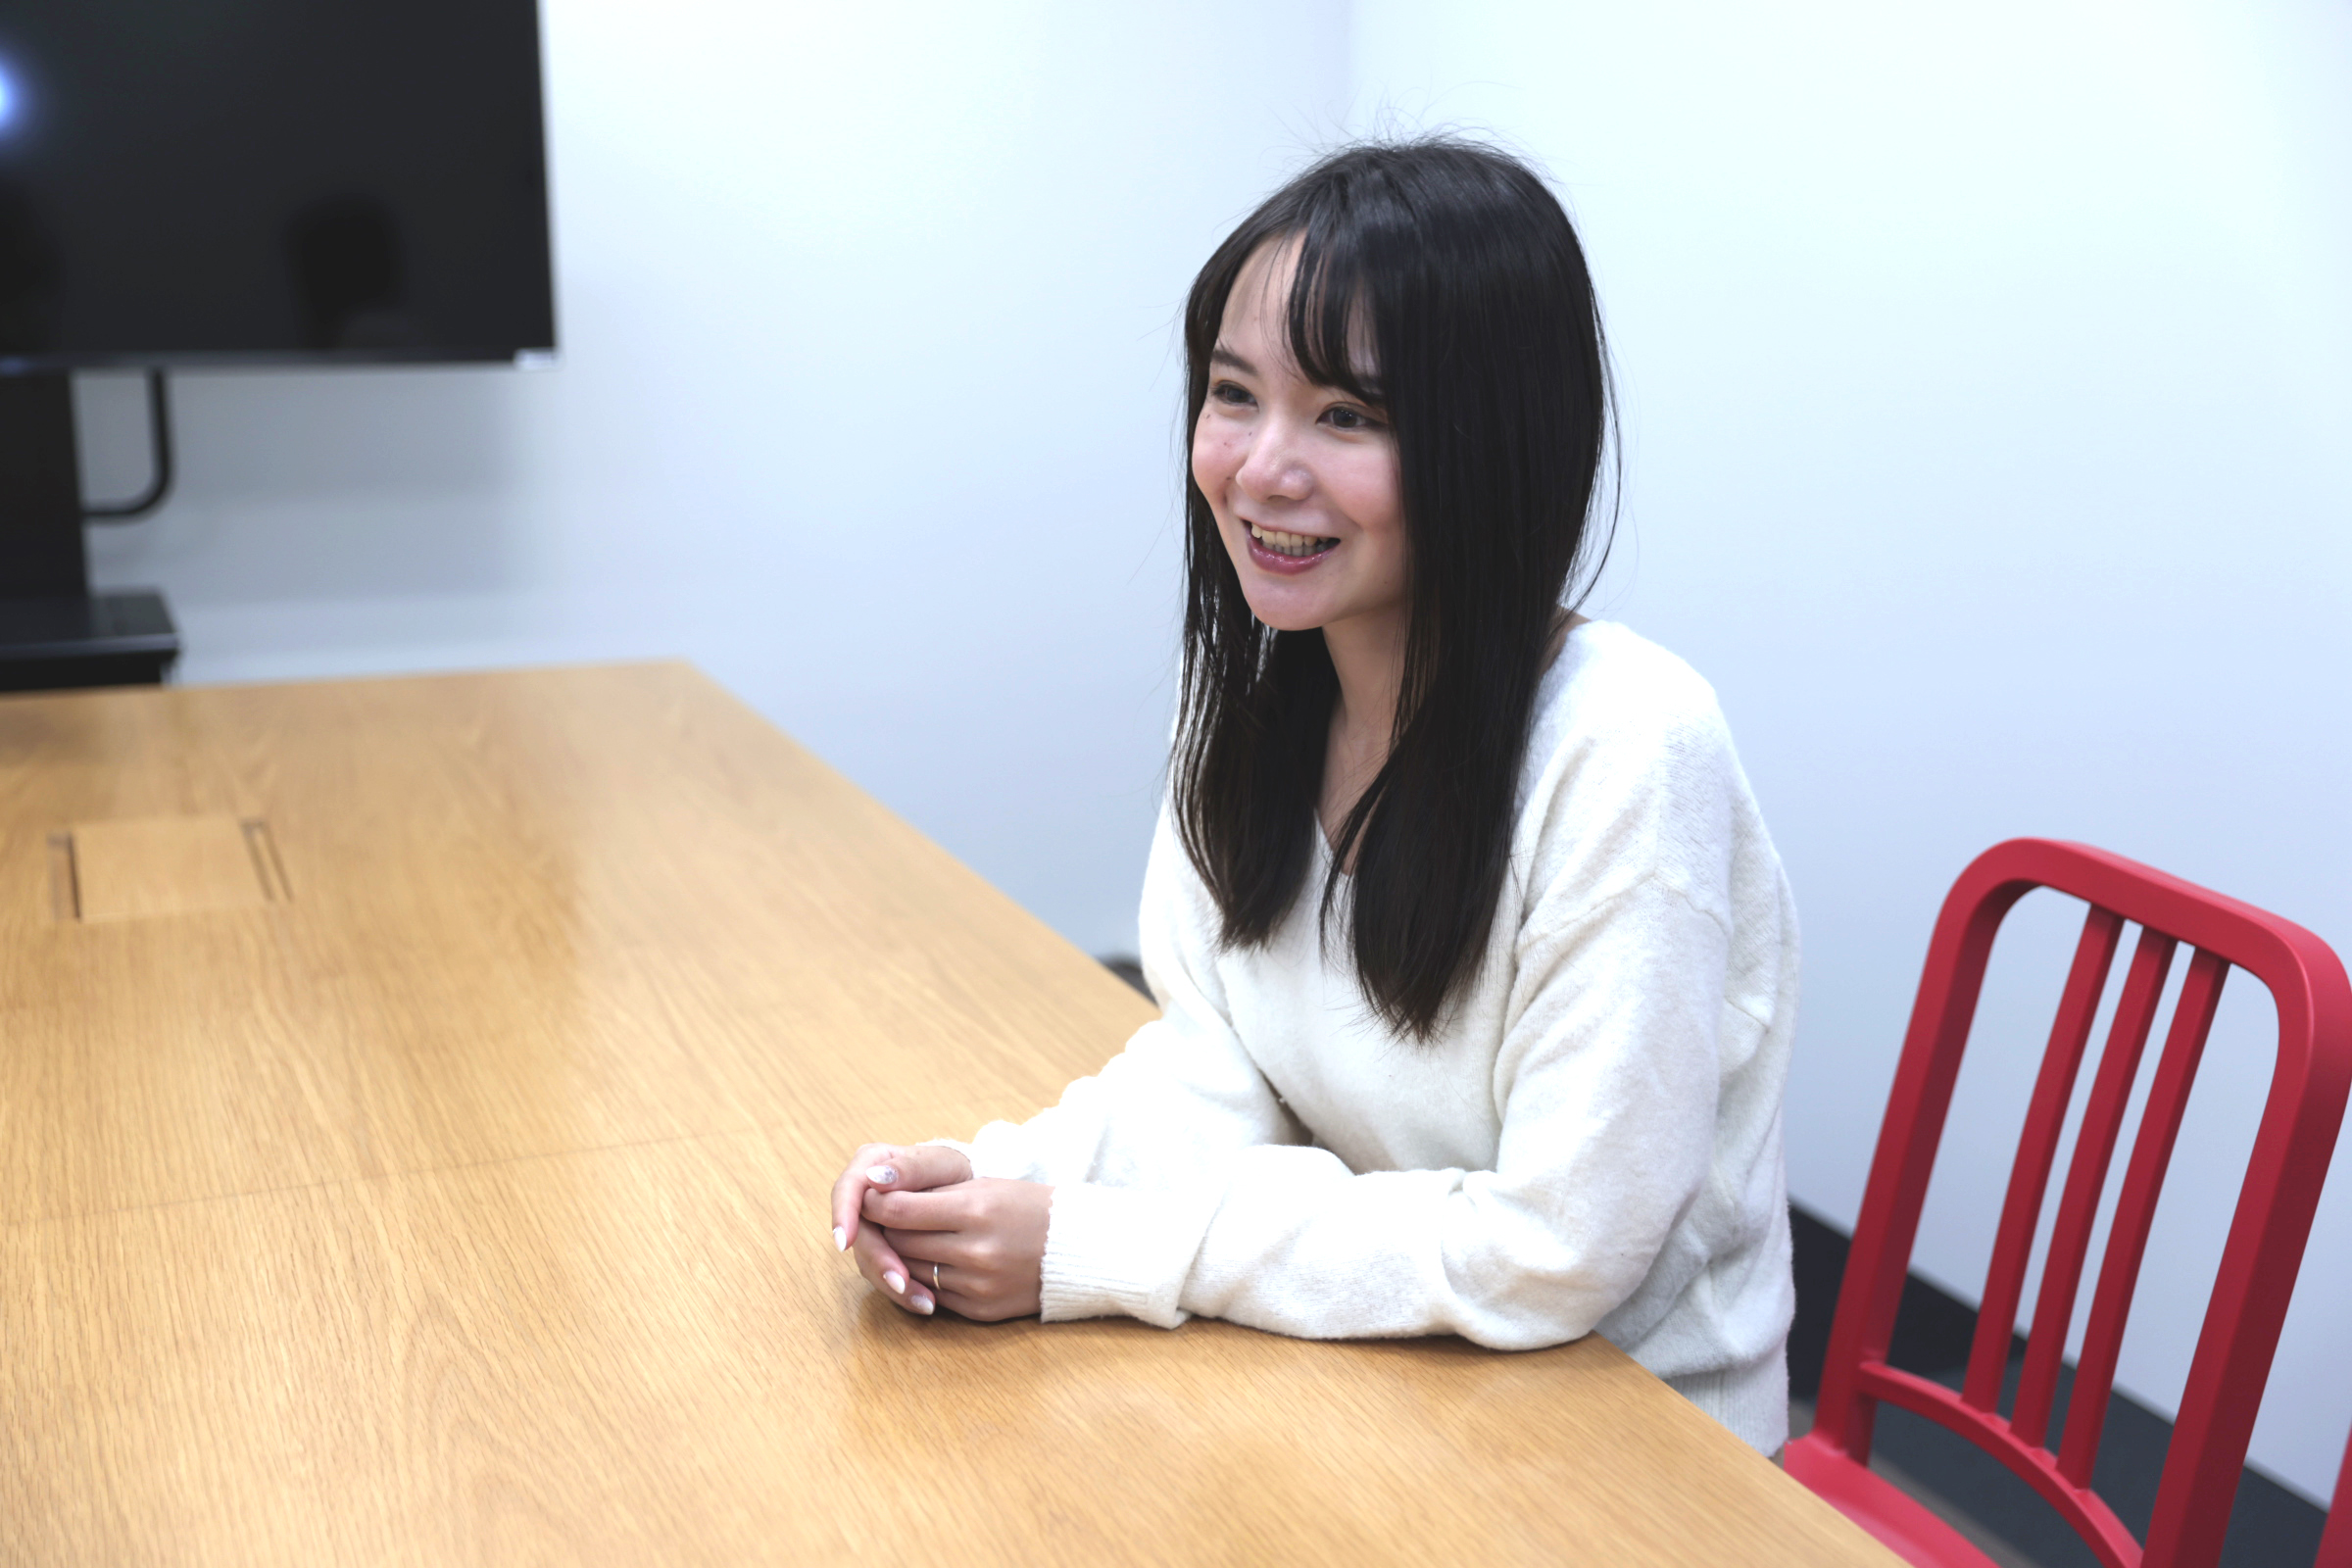 石田が椅子に座りながら、仕事のやりがいなどについてインタビューに答えている様子の写真